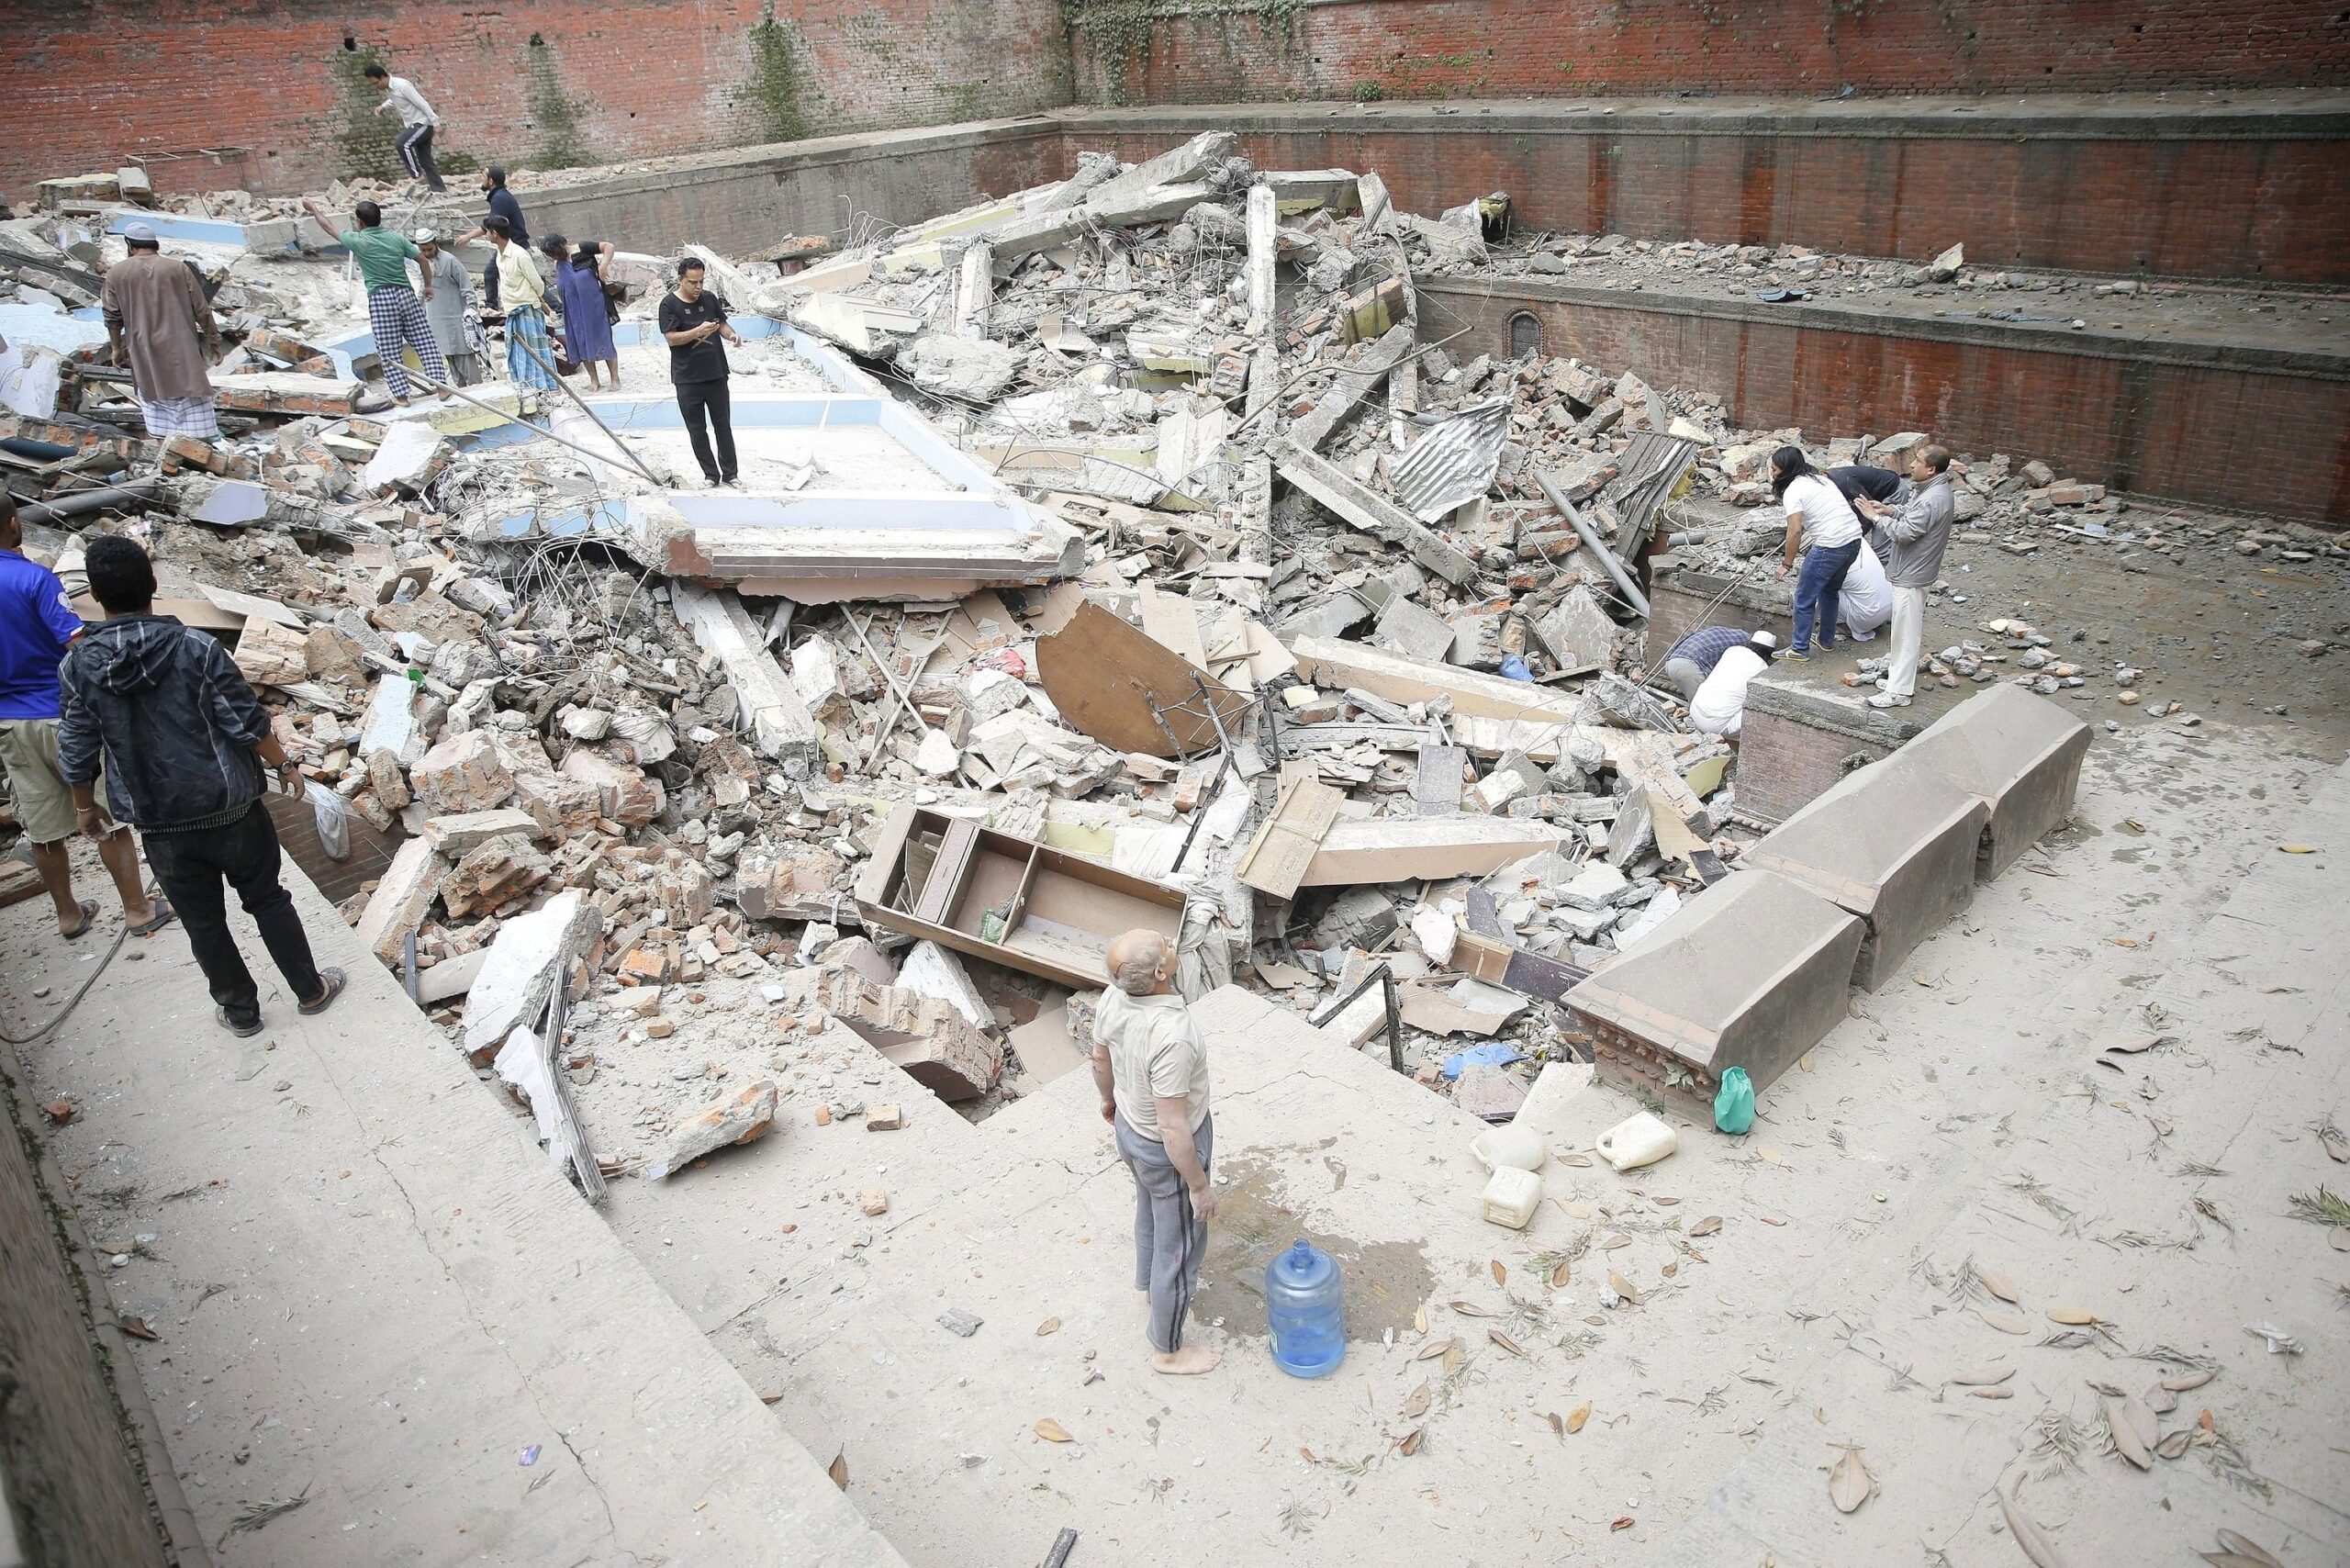 Ein schweres Erdbeben im Himalaya hat zahlreiche Häuser in Nepal einstürzen lassen.